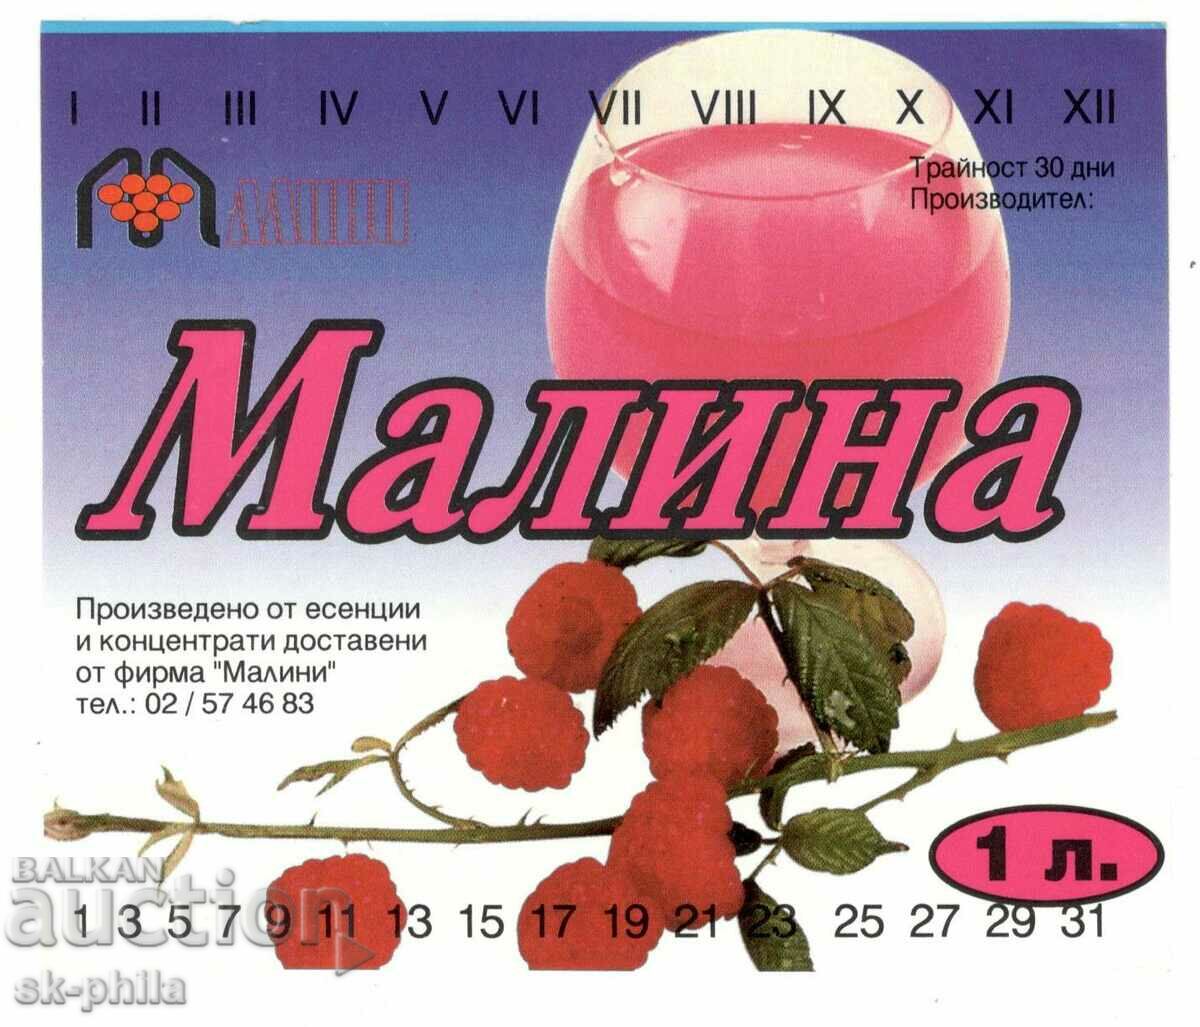 Label of non-alcoholic "Raspberry"